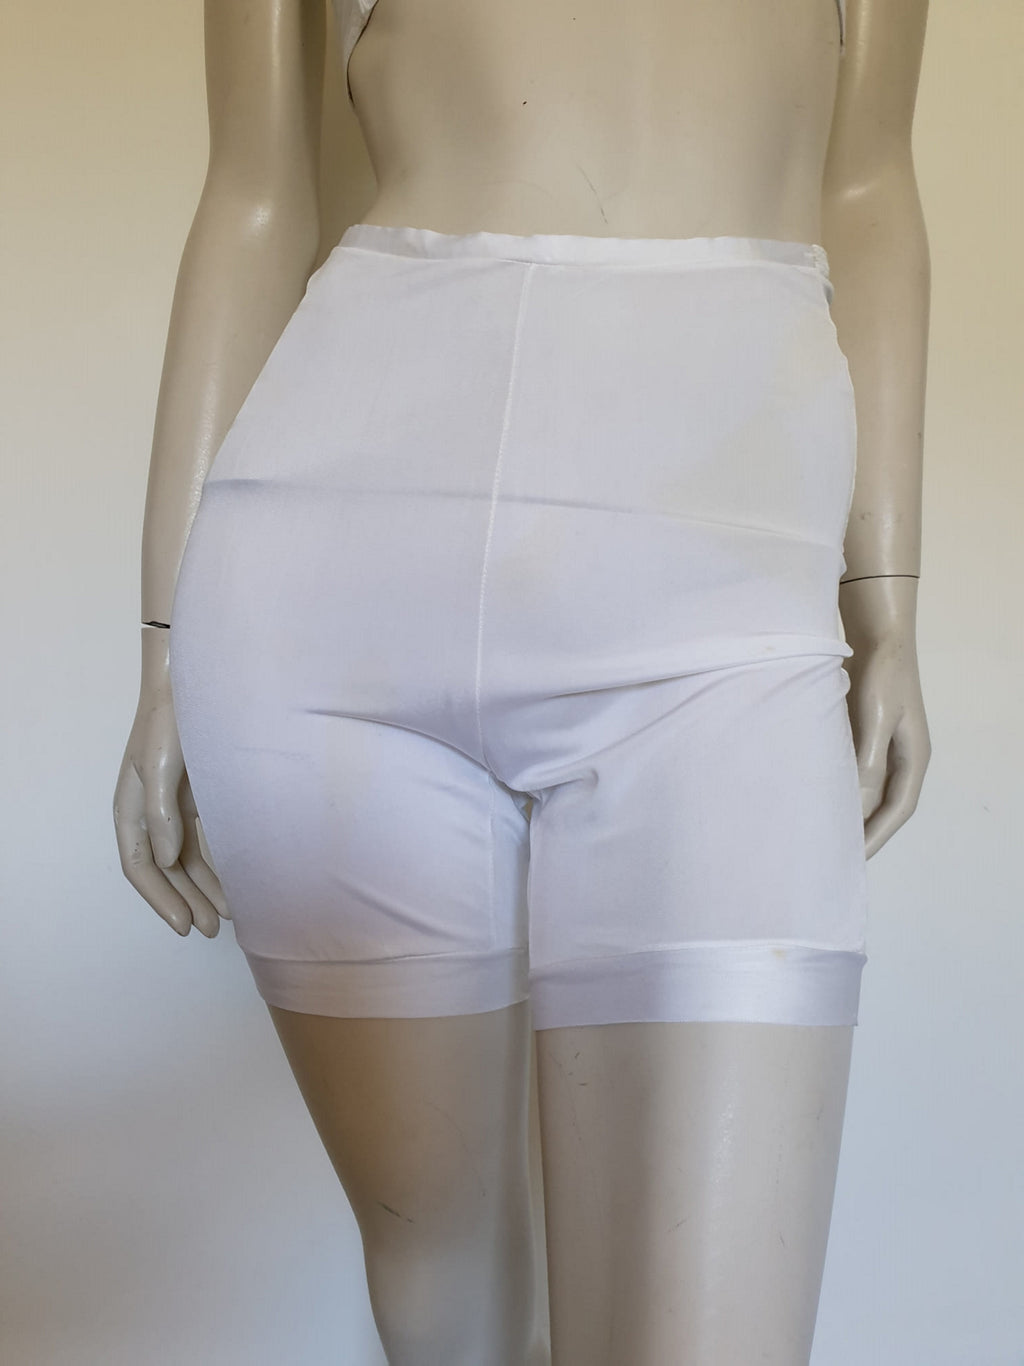 1940s vintage panties nana pants bloomers lingerie